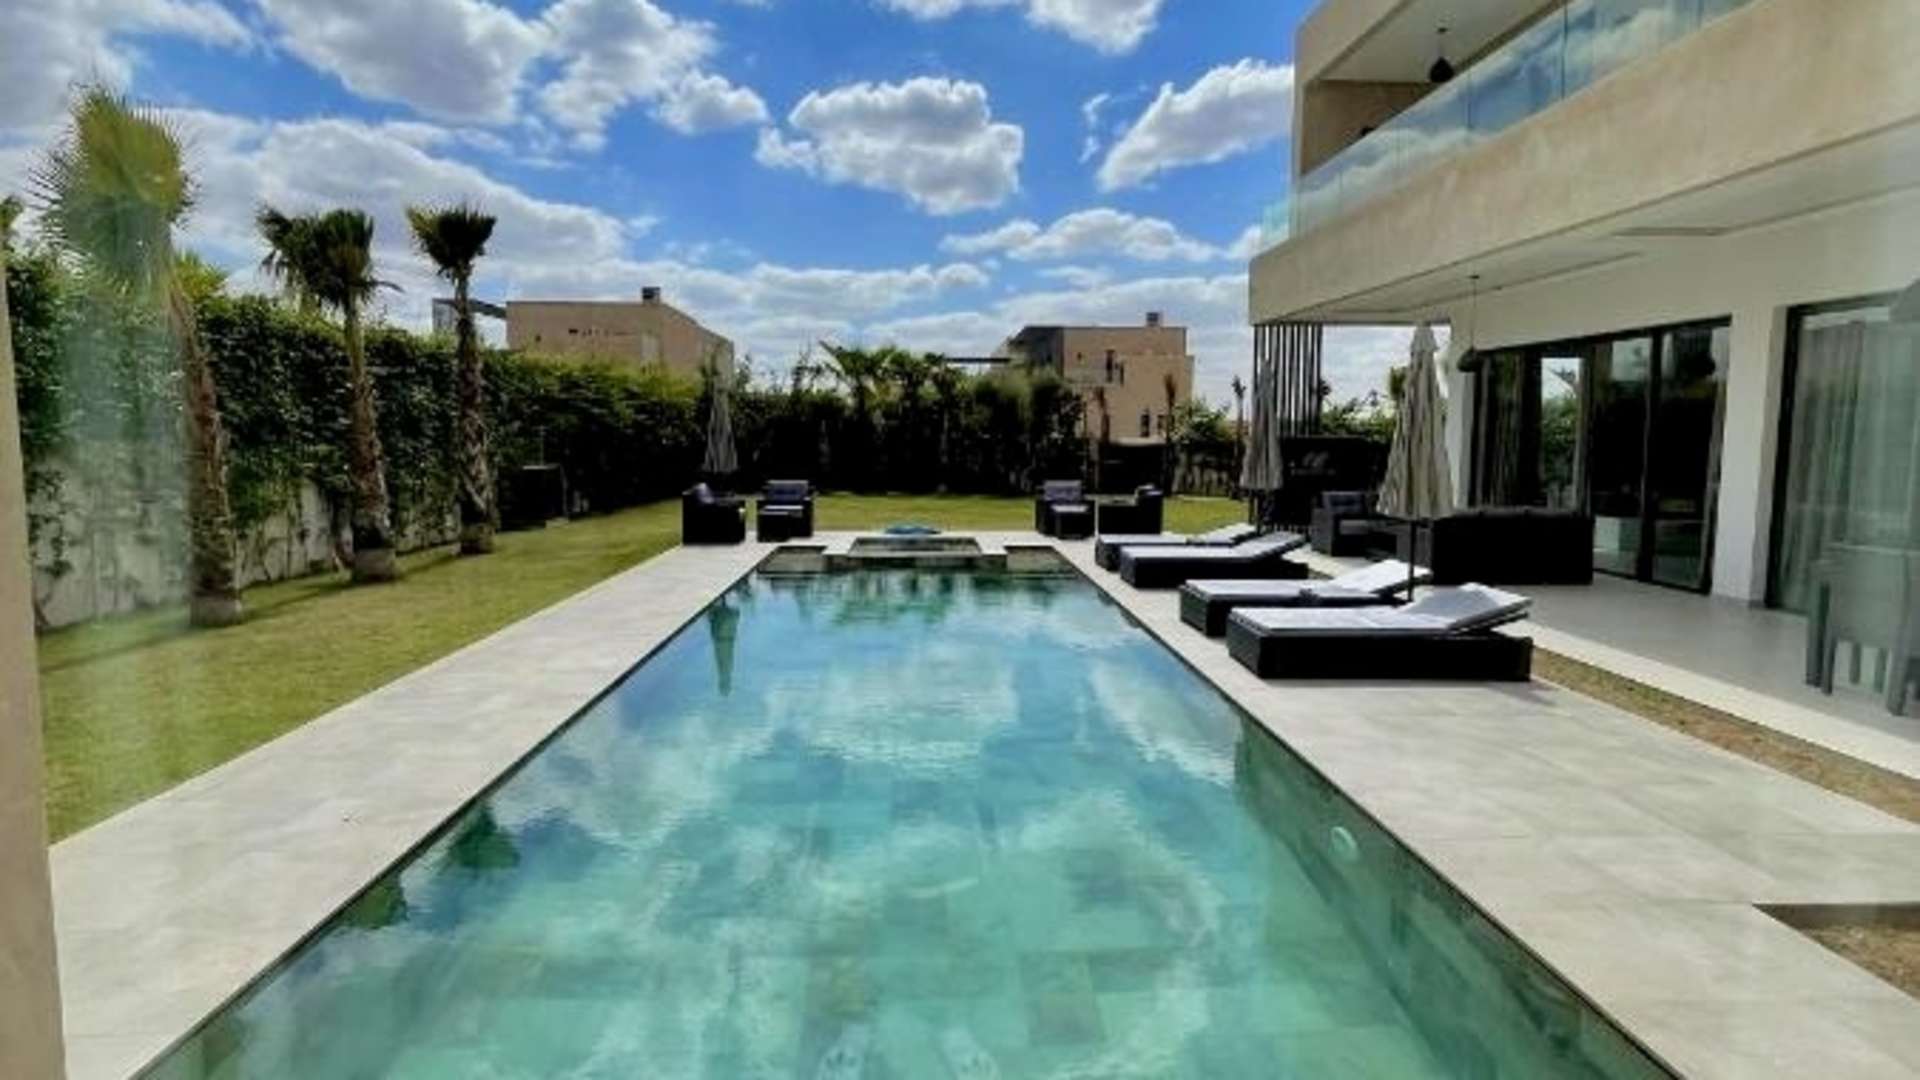 Location de vacances,Villa,Villa contemporaine de 5 suites avec piscine privée Route du barrage à Marrakech,Marrakech,Route Amizmiz